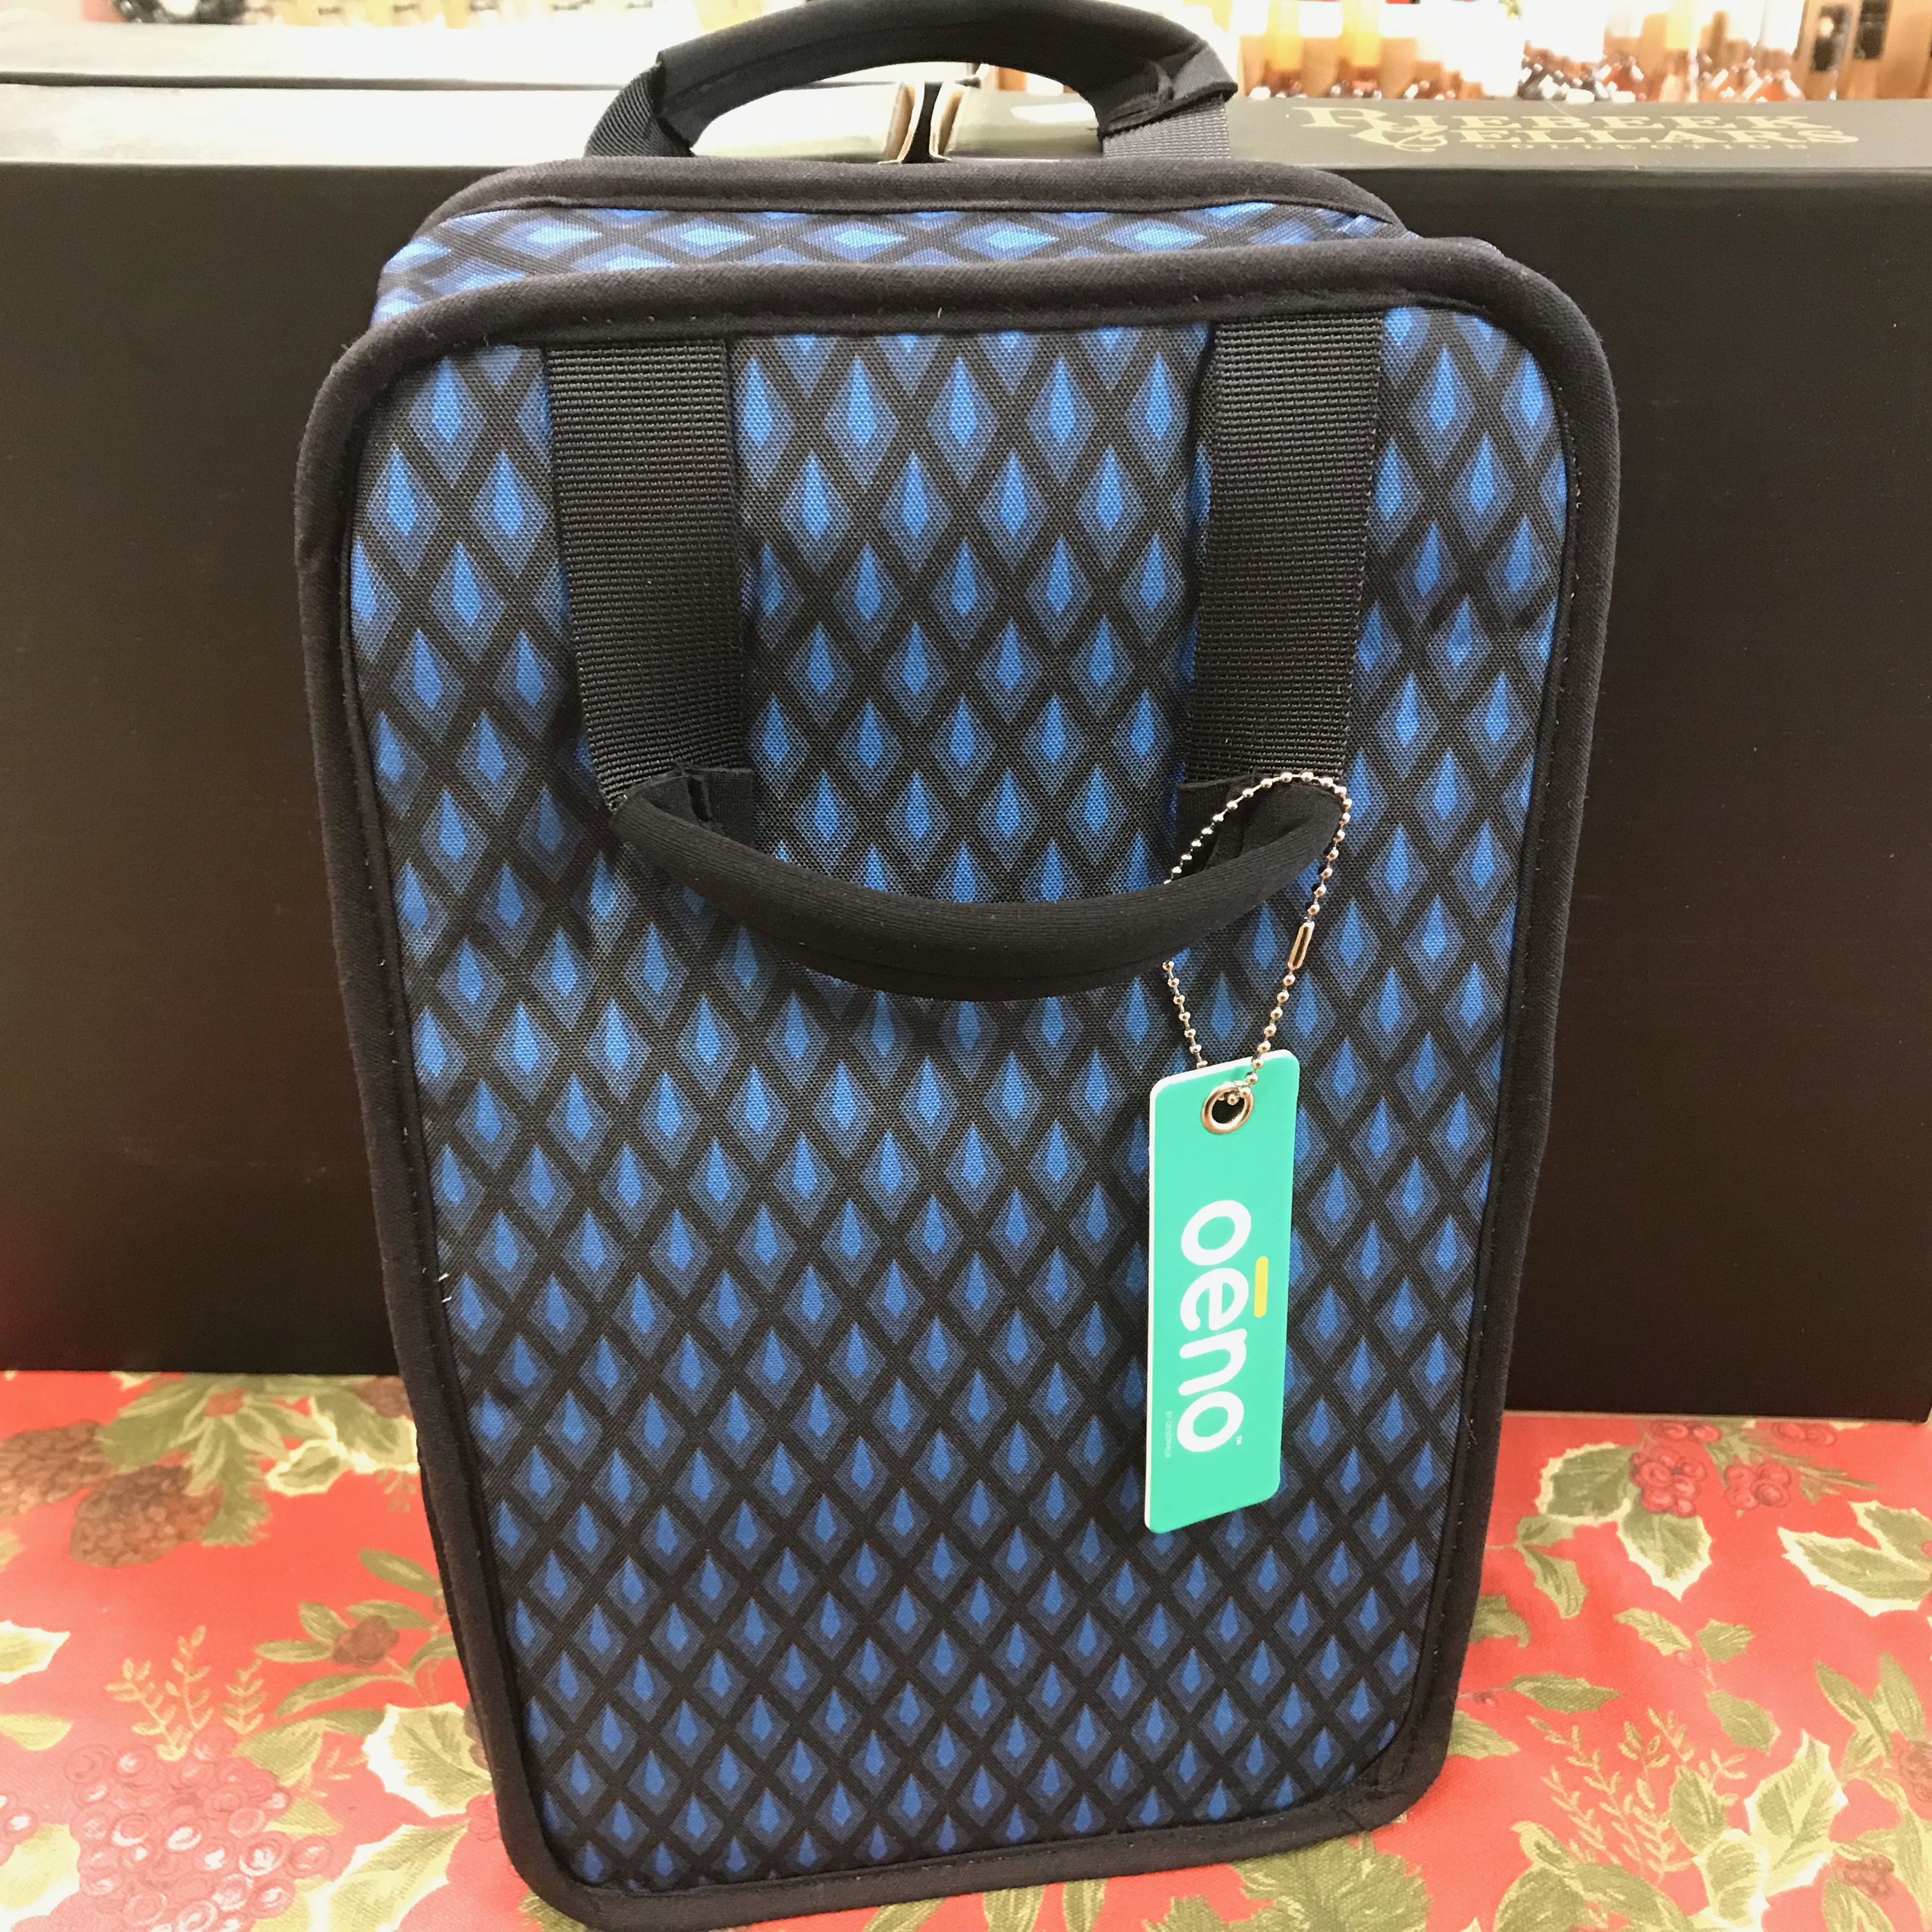 Oêno Wine Carrier bag - carries 2 wine bottles and opener